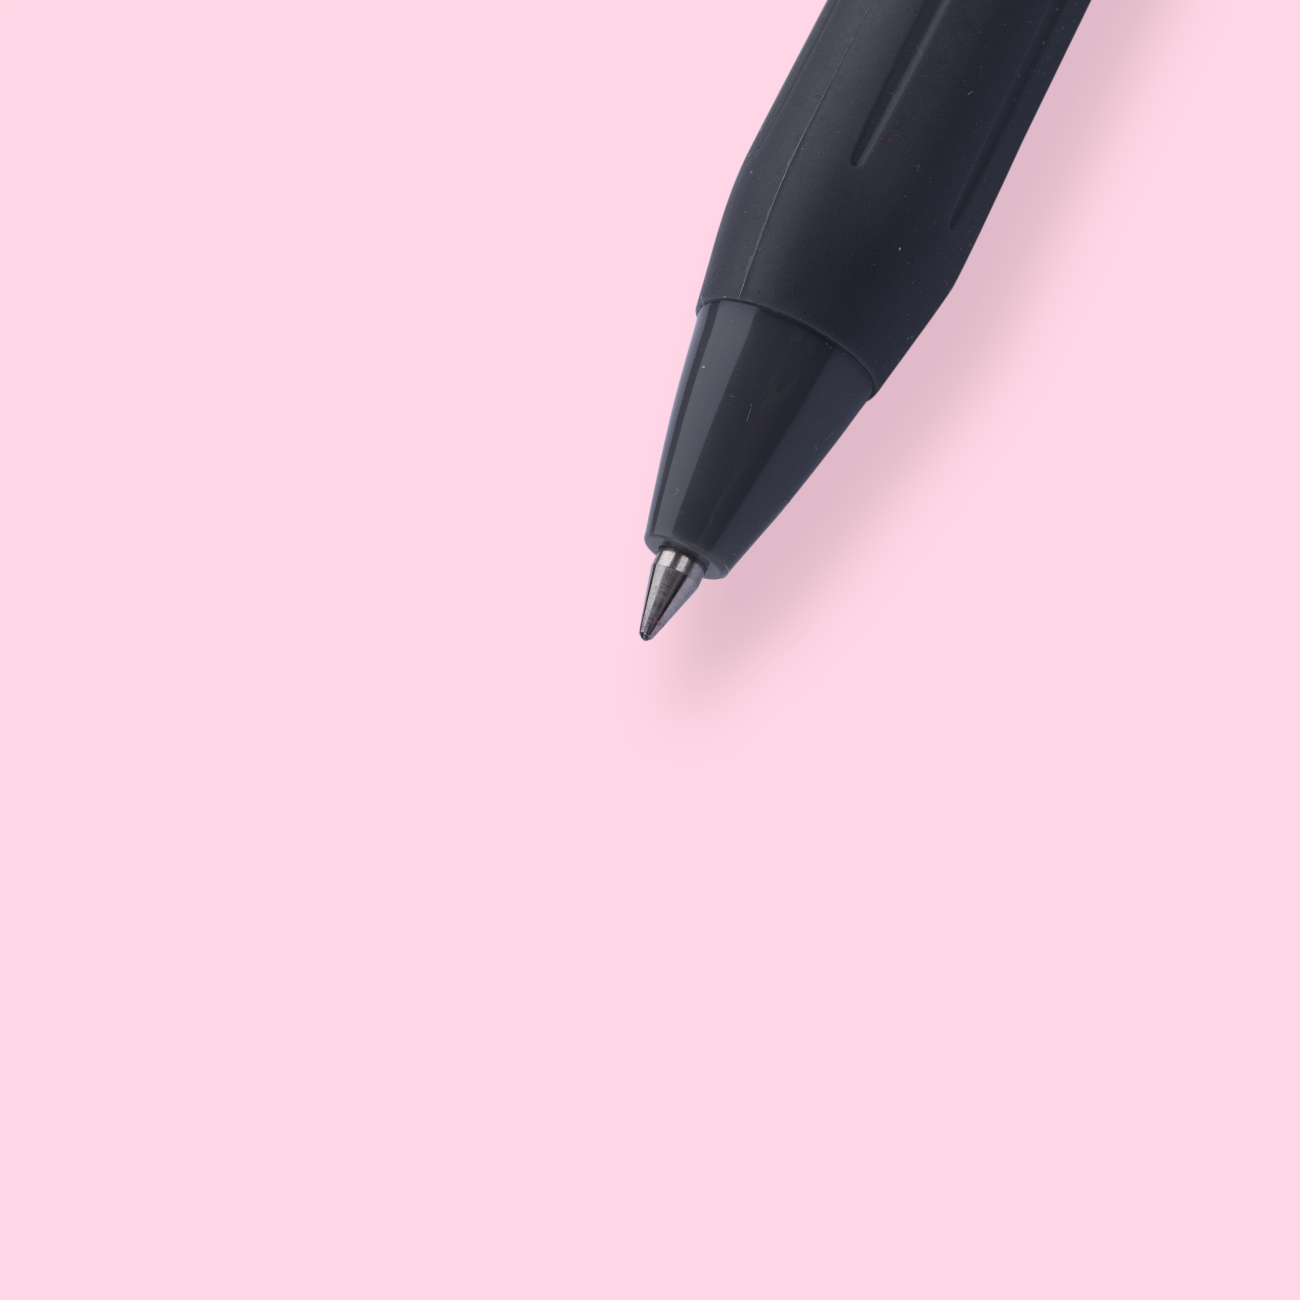 Color Scheme Pen Set - The Black Zon